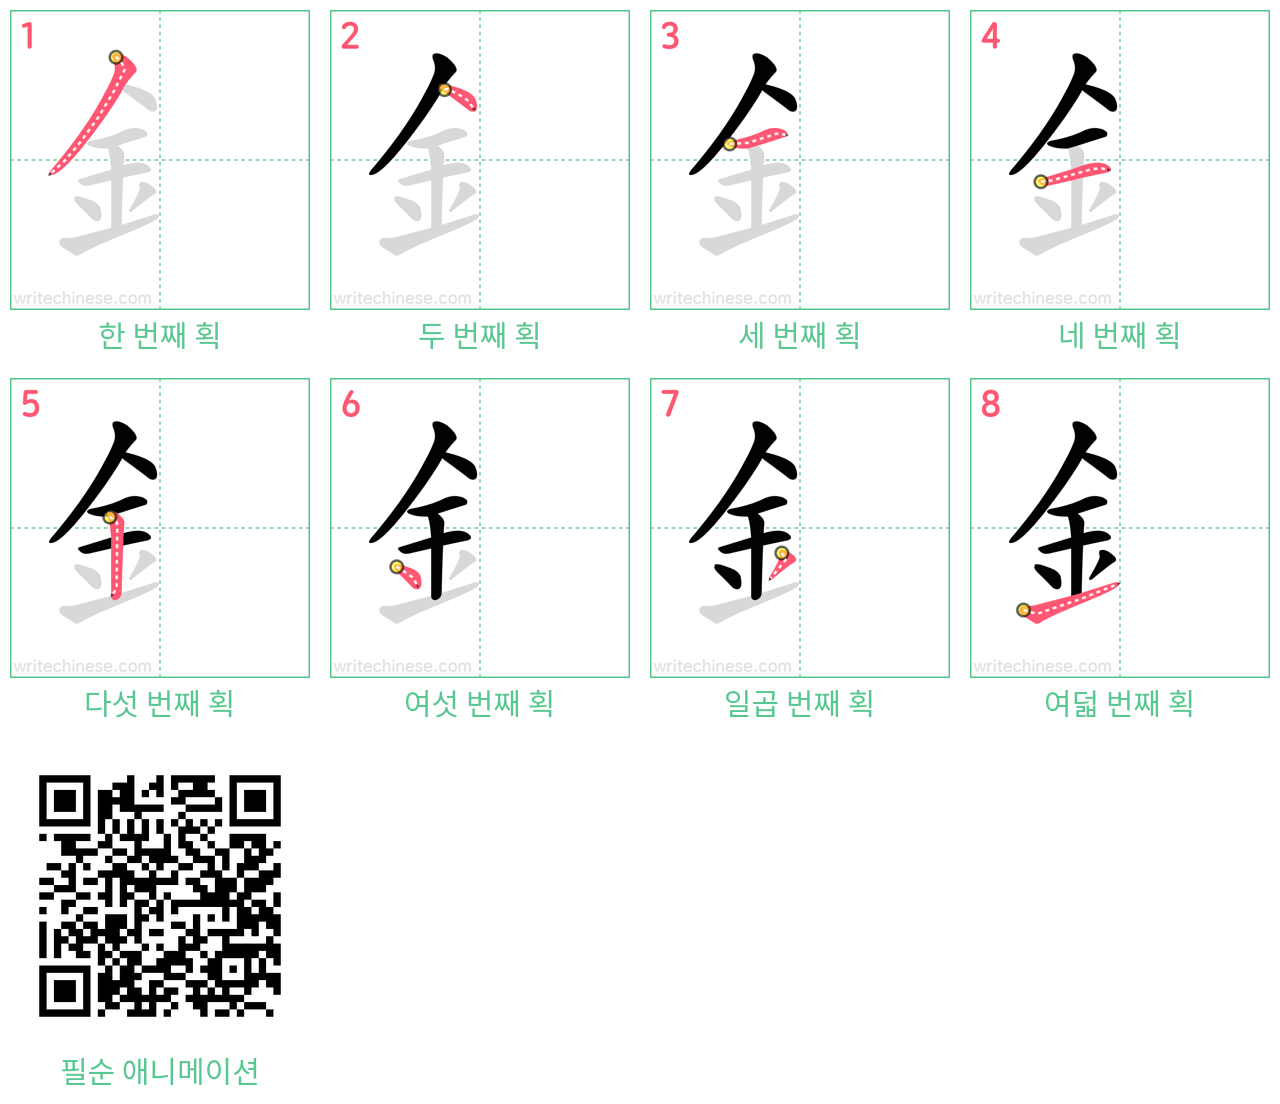 釒 step-by-step stroke order diagrams